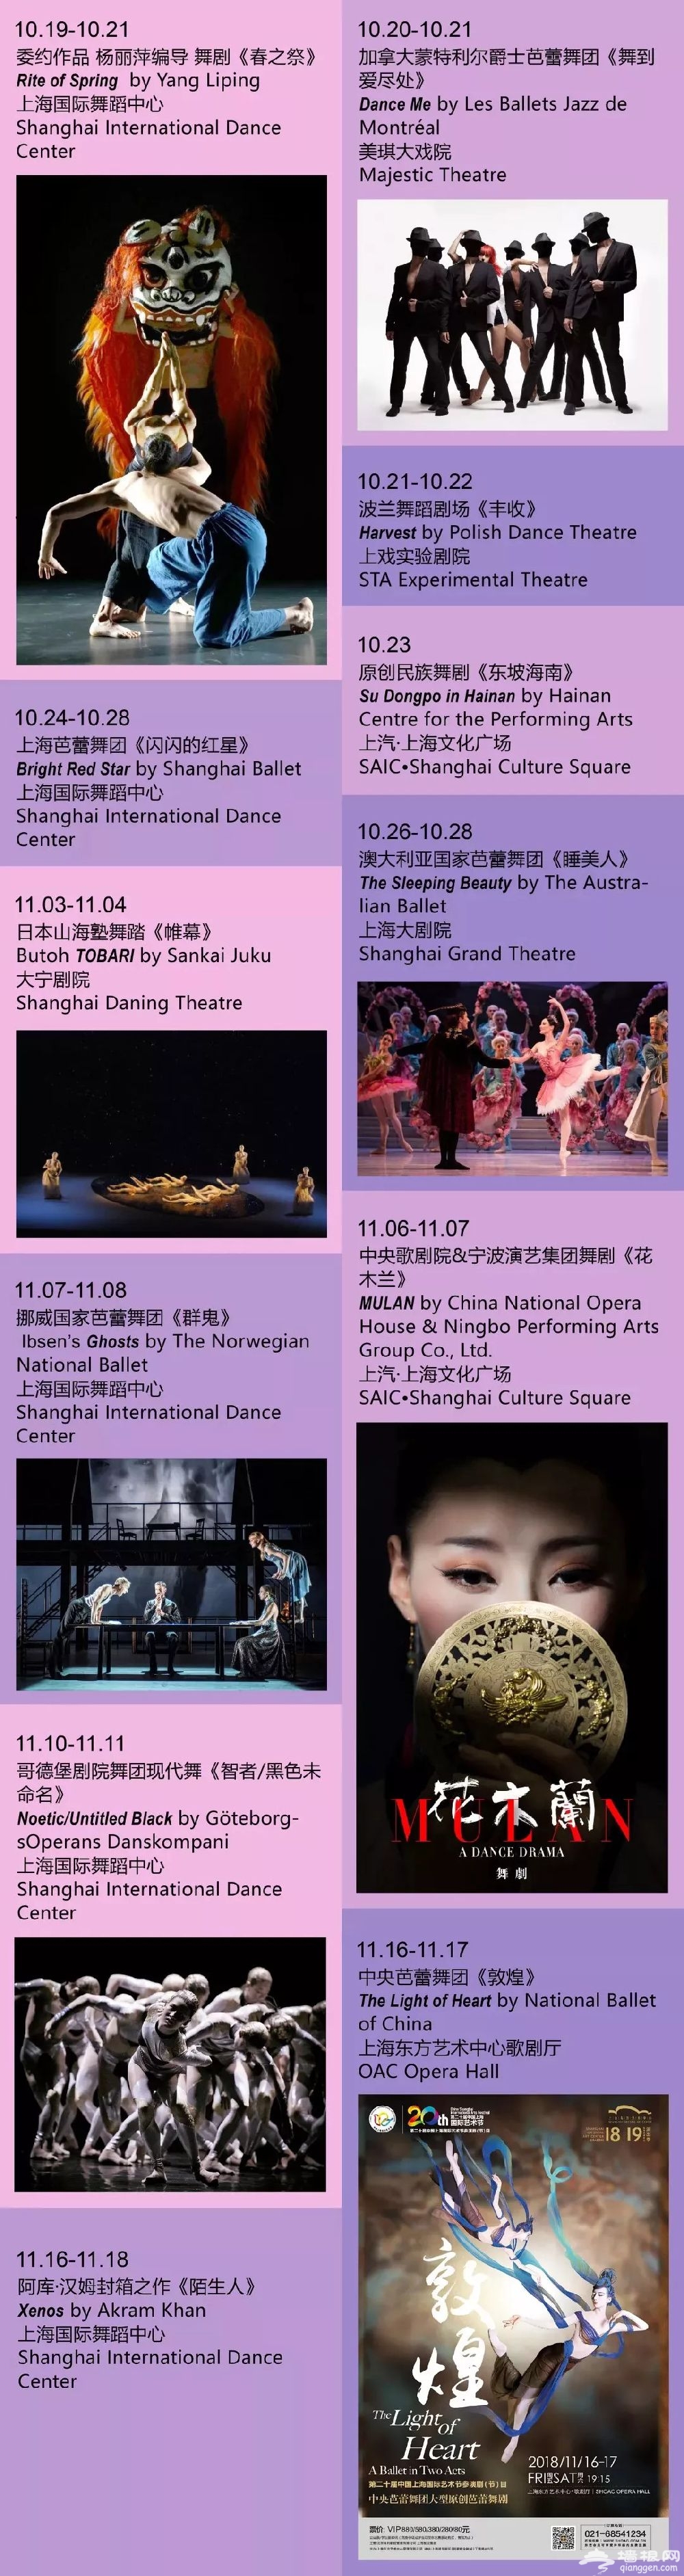 2018上海国际艺术节优惠票购票地址及方式